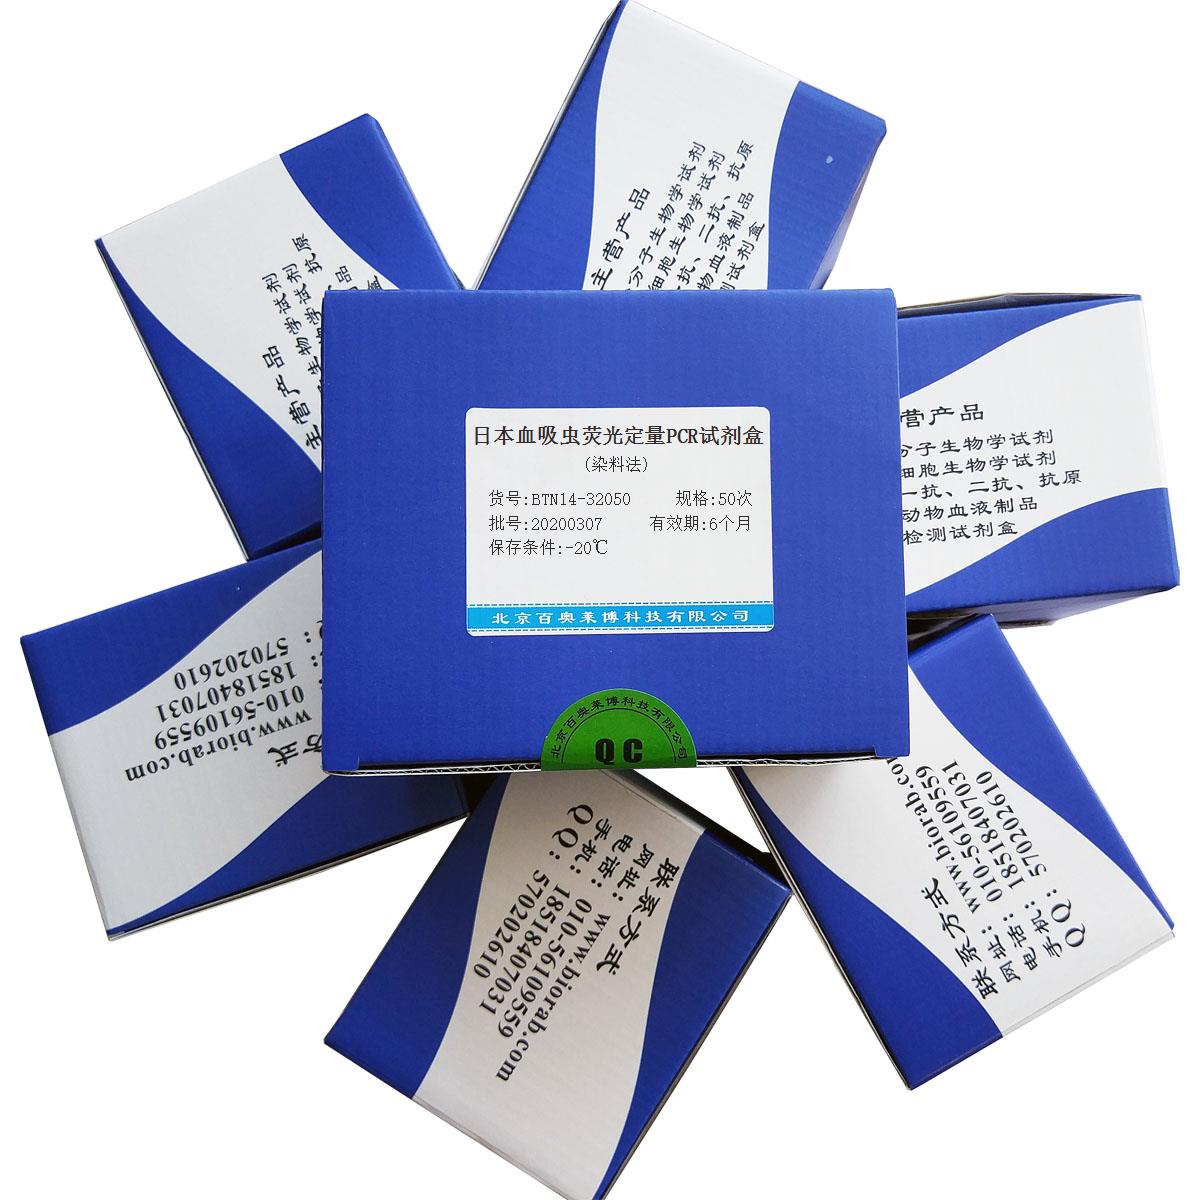 日本血吸虫荧光定量PCR试剂盒(染料法)